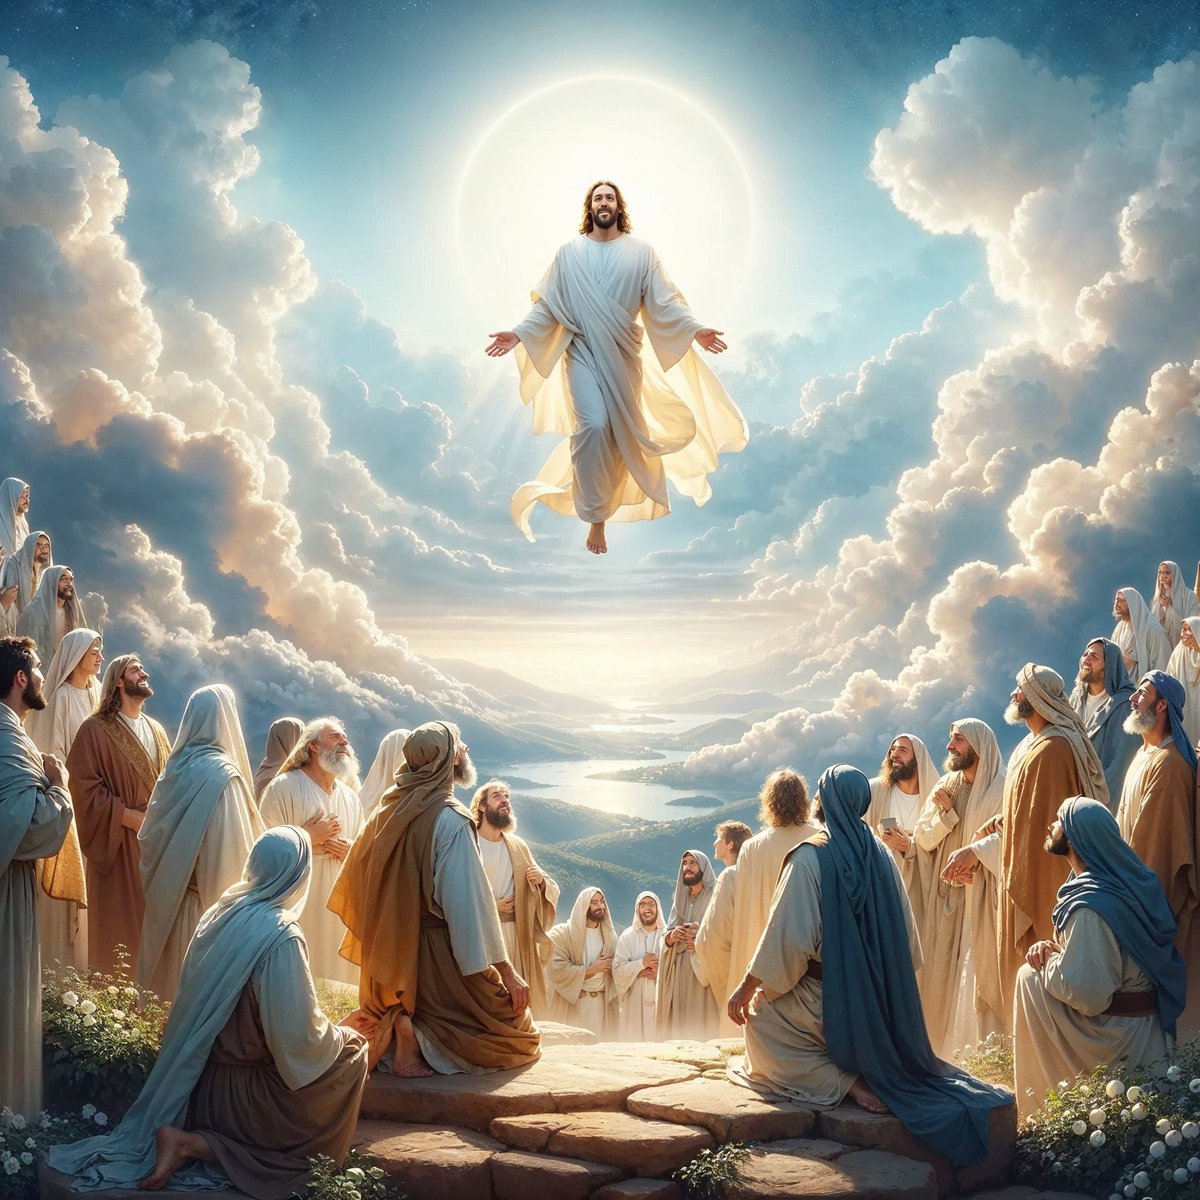 La fête de l'Ascension, qui célèbre l'élévation de Jésus-Christ au ciel après sa résurrection, invite à une méditation profonde sur la transcendance et la transformation personnelle. À travers cet événement, la tradition chrétienne offre une métaphore puissante de l'élévation de